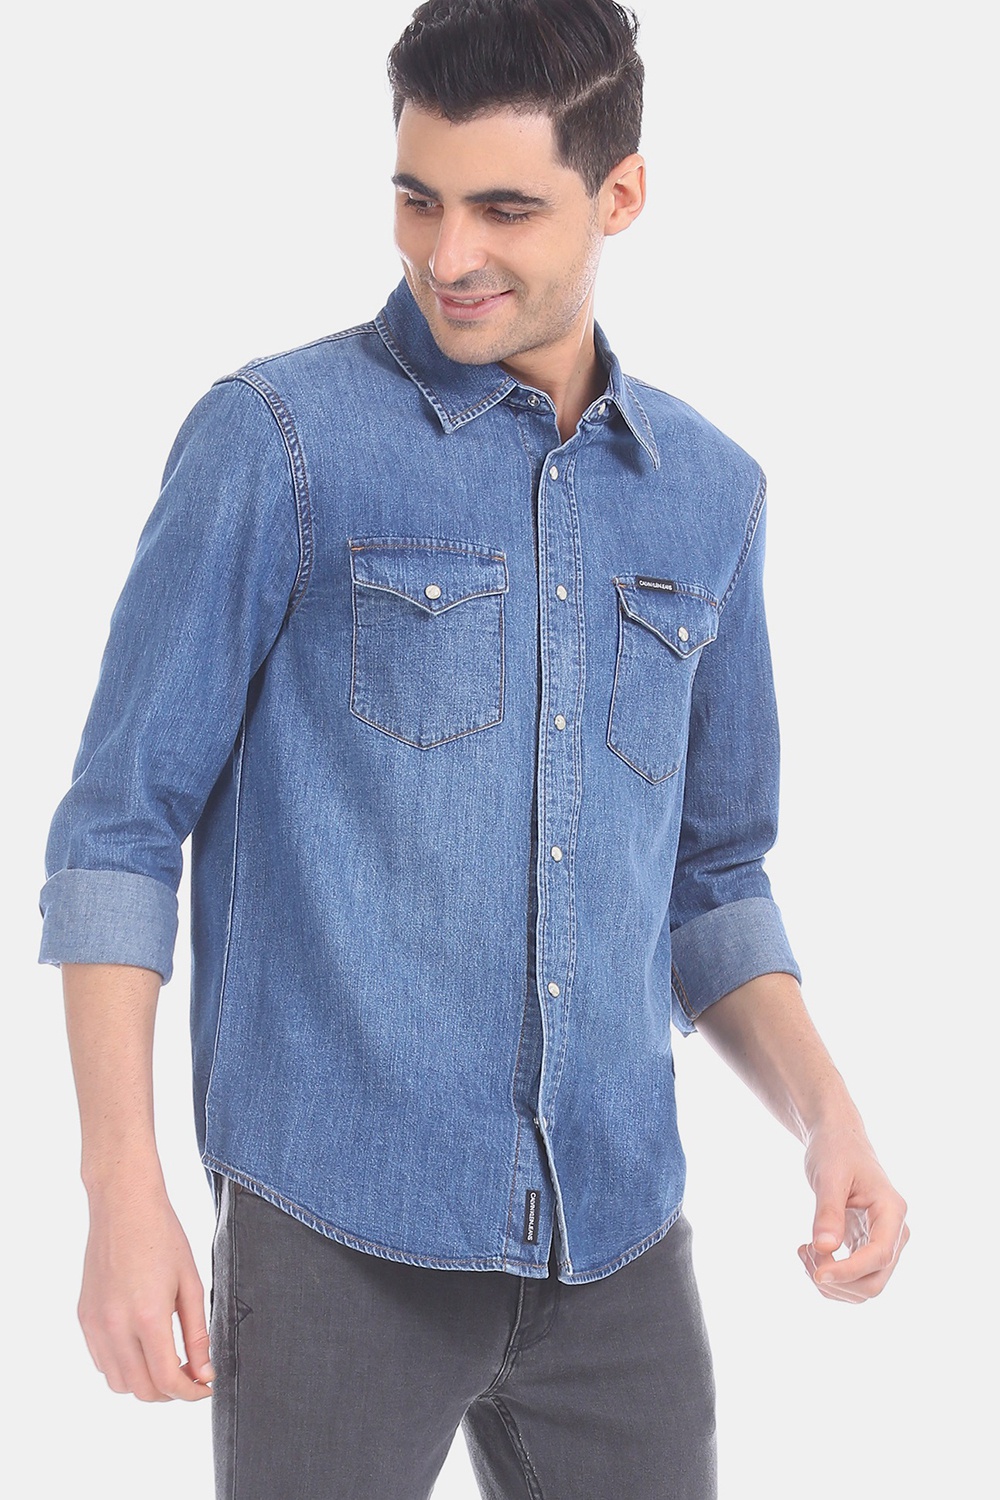 Calvin Klein Denim Double Pocket Men's Shirt | Odel.lk